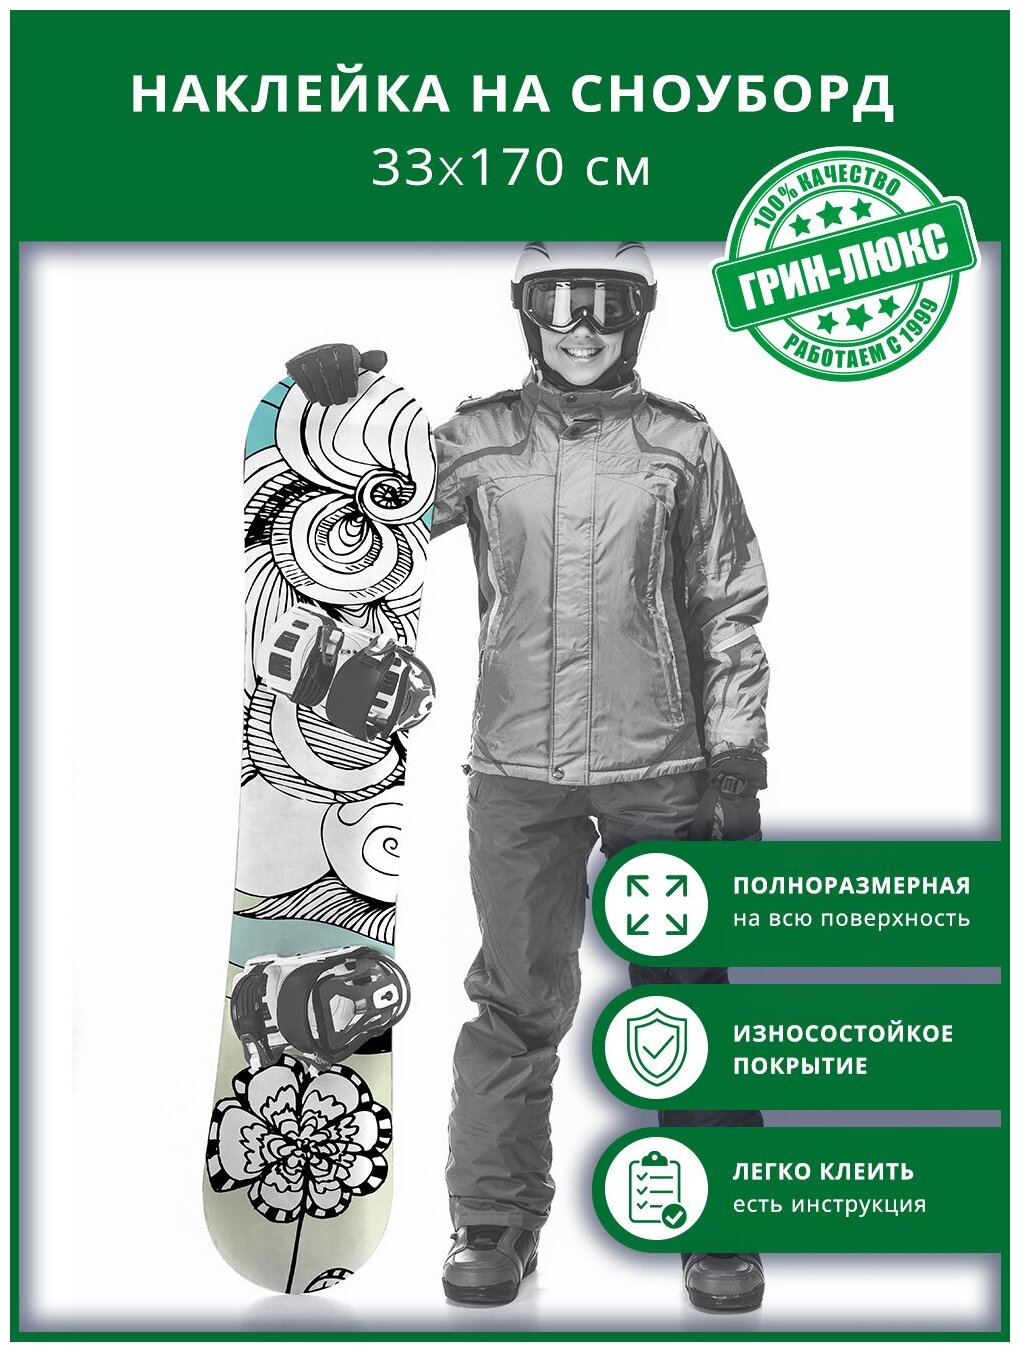 Наклейка на сноуборд с защитным глянцевым покрытием 33х170 см "Графика бирюзовая"